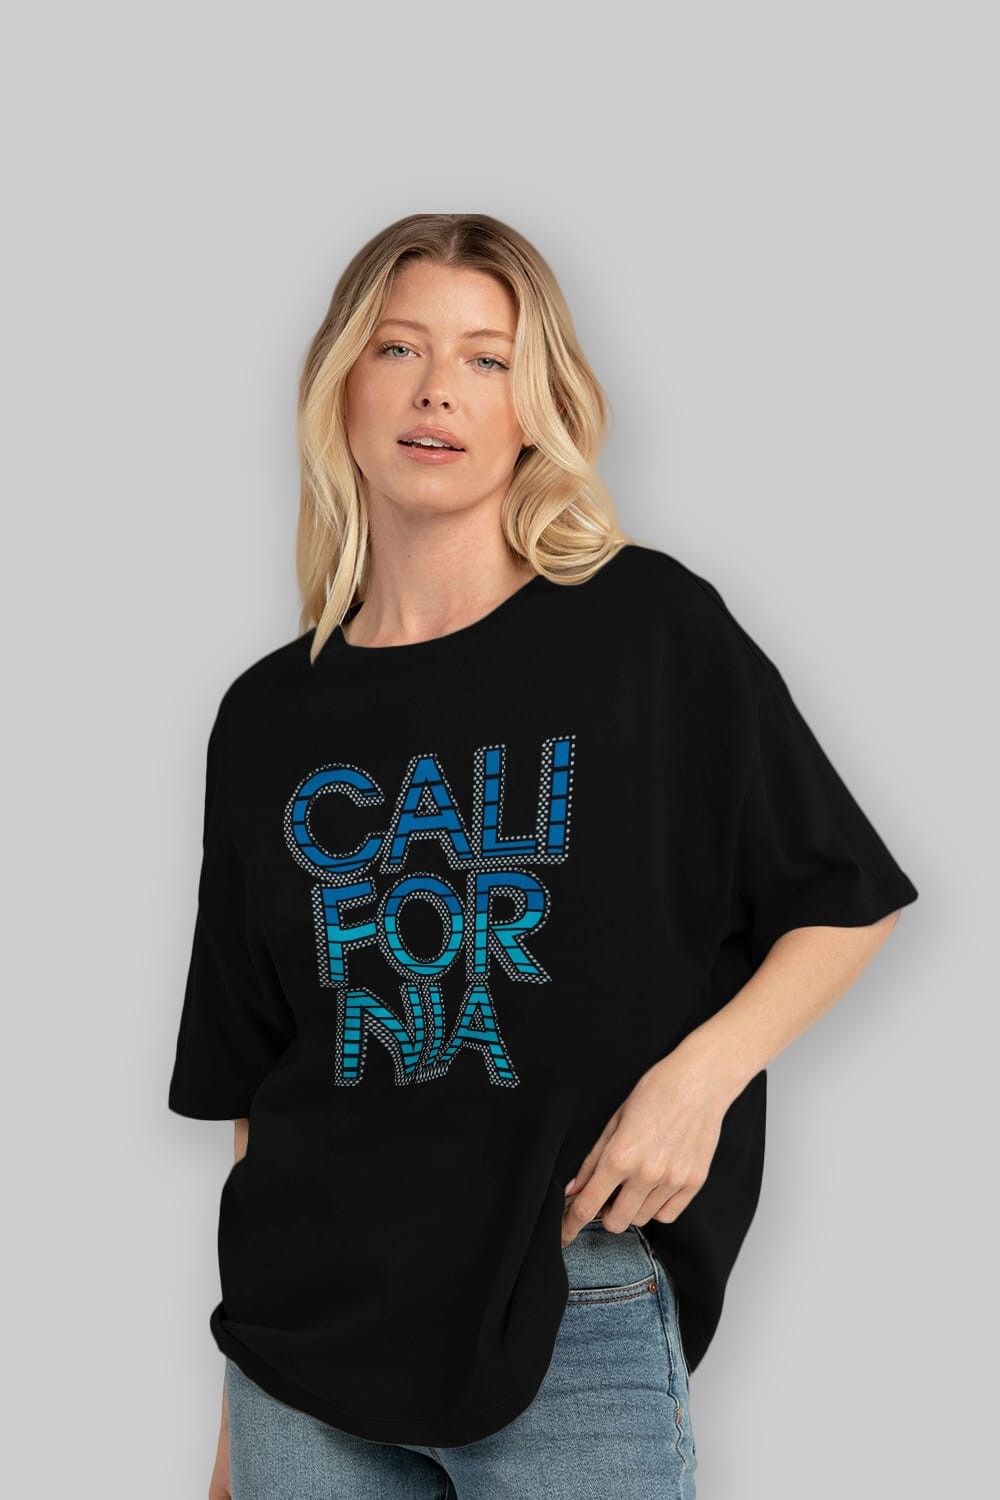 California 3 Ön Baskılı Oversize t-shirt Erkek Kadın Unisex